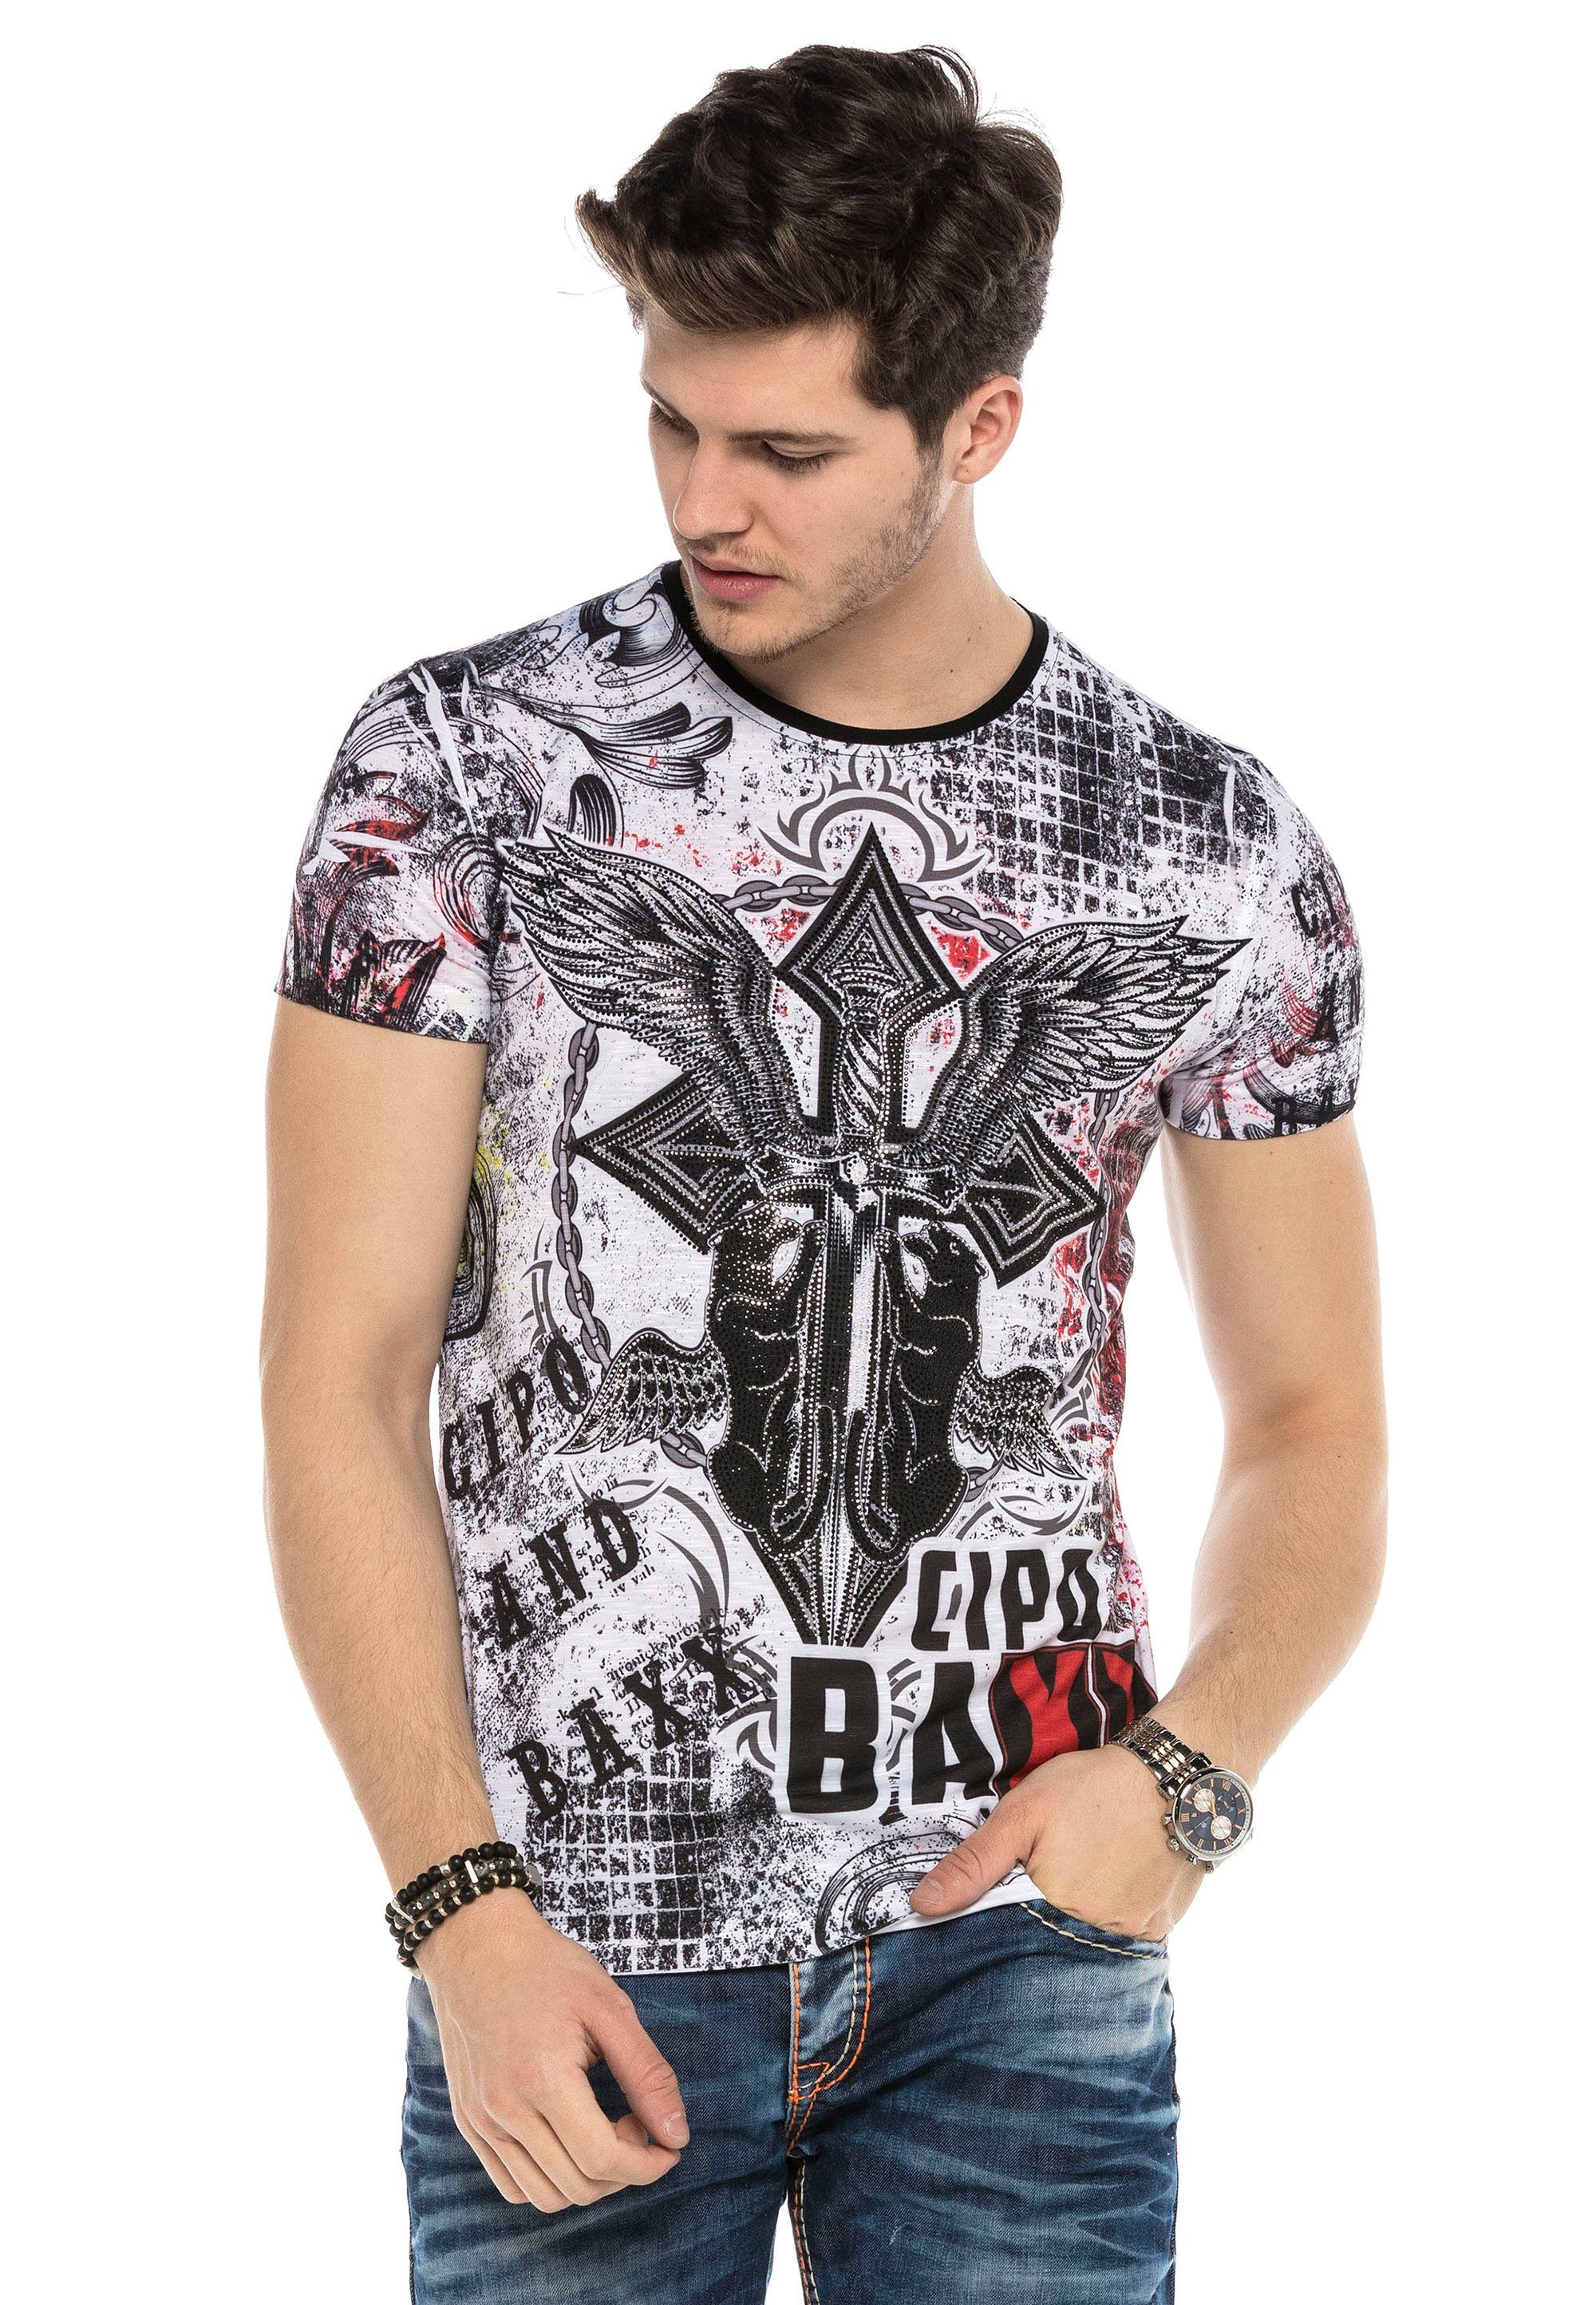 Baxx mit grafischem Print & Cipo T-Shirt